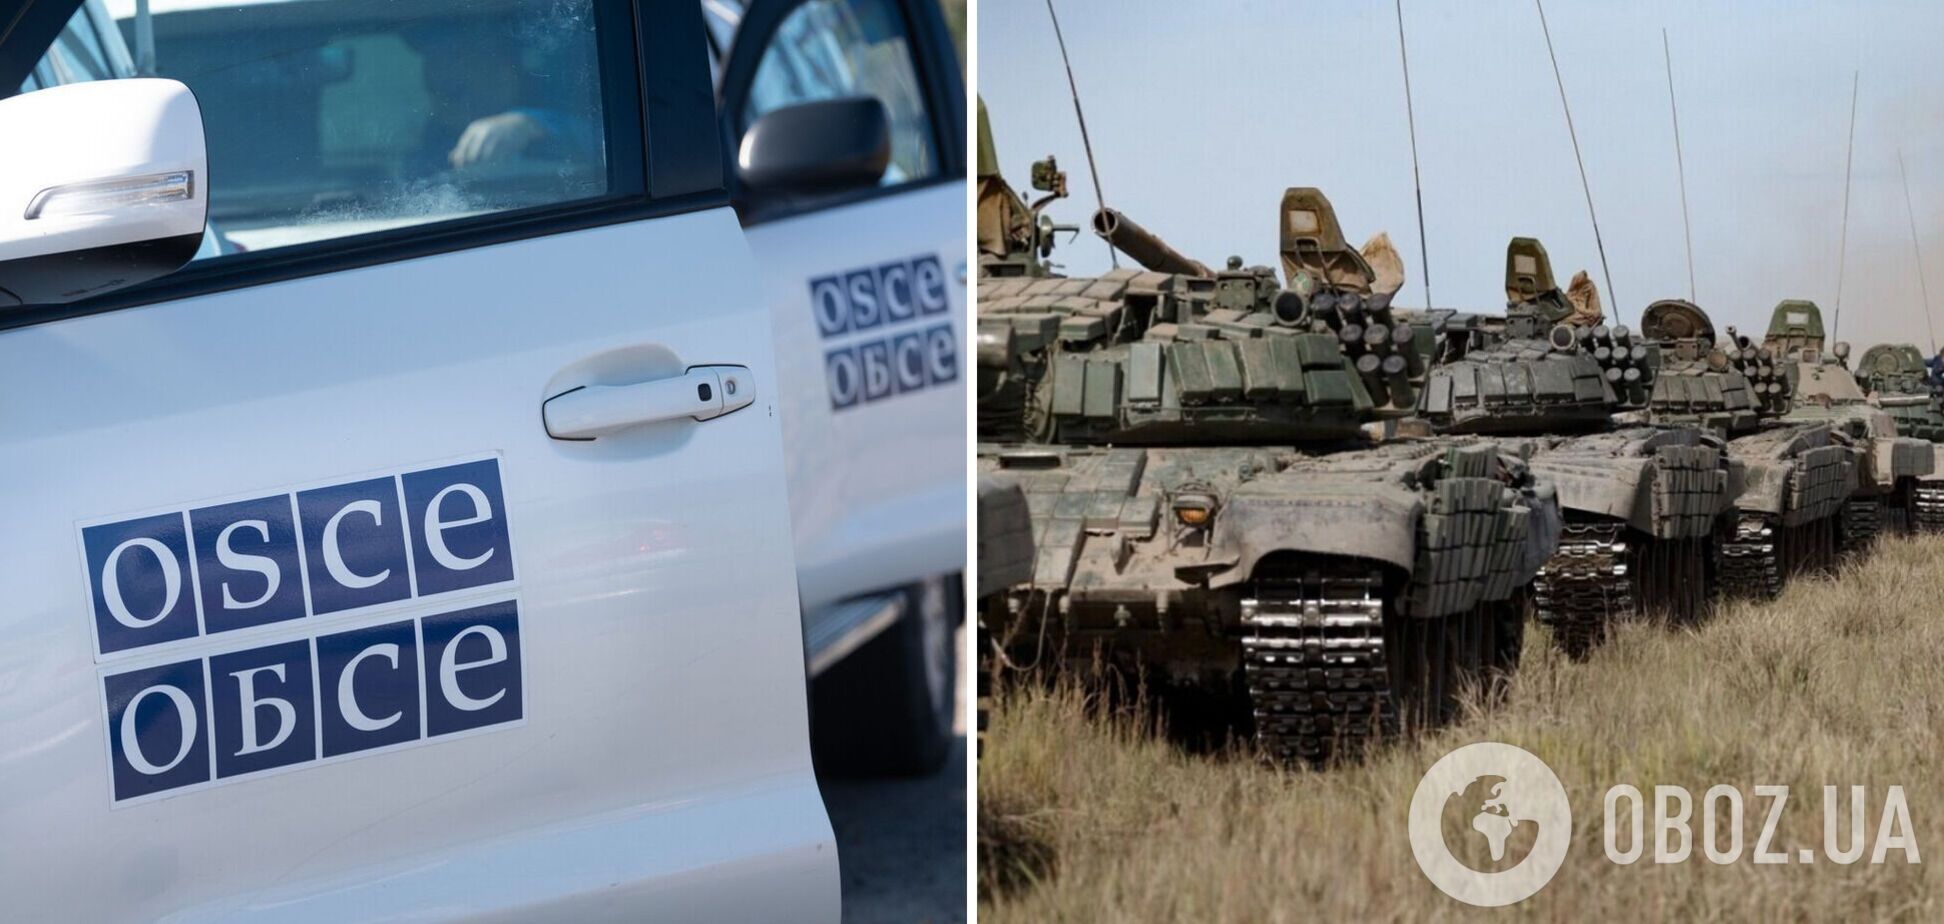 'Мы предвидели неудачу с самого начала': в СММ ОБСЕ признались, что не были готовы к вторжению РФ в Украину